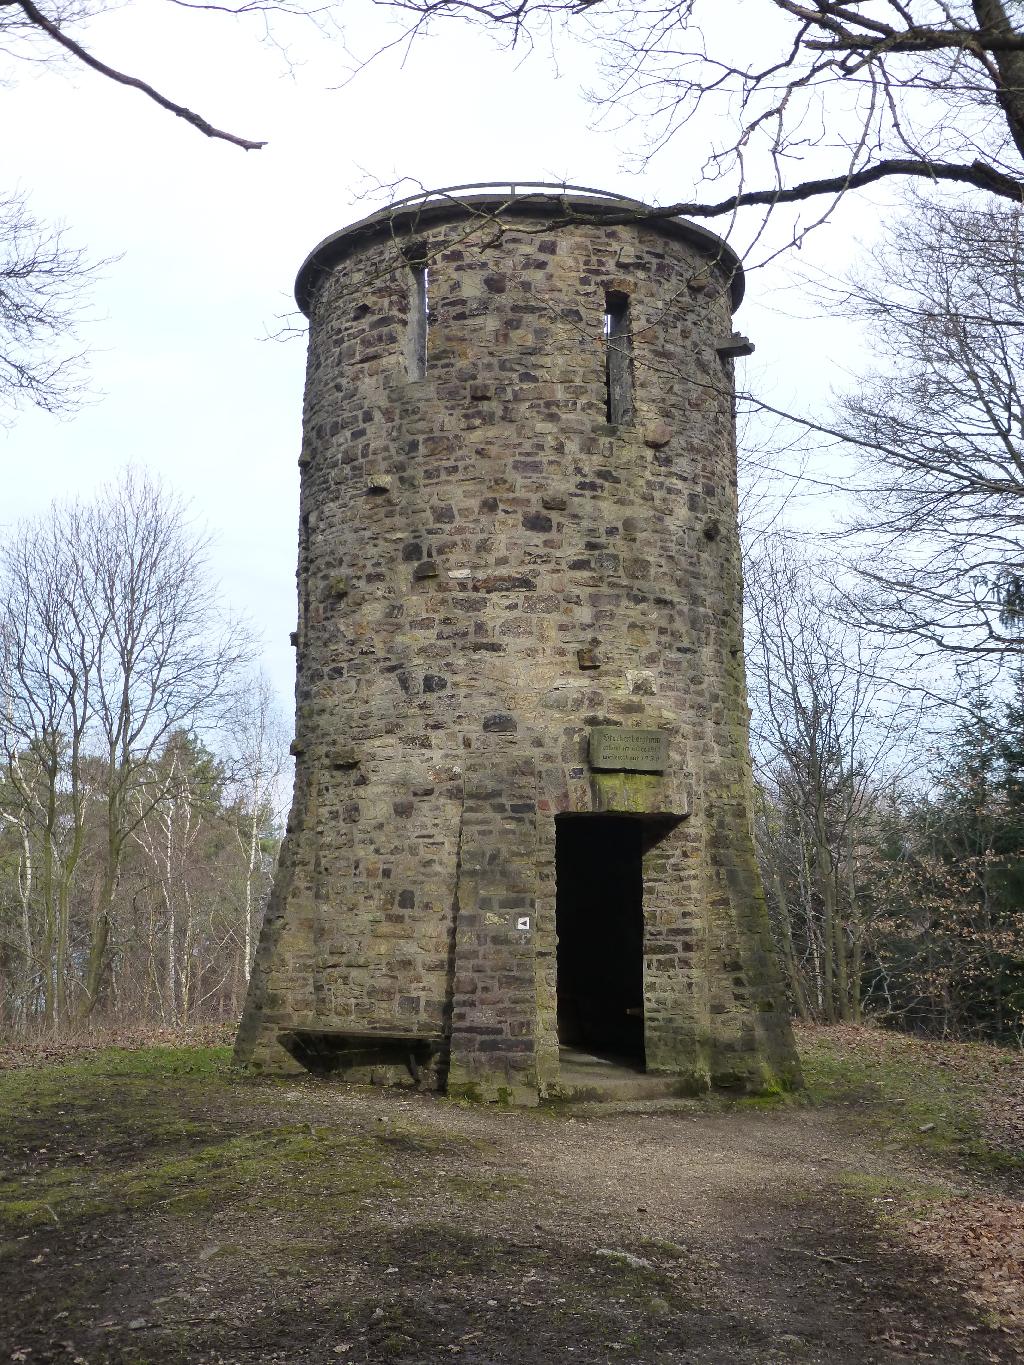 Steckenbergturm in Bad Neuenahr-Ahrweiler